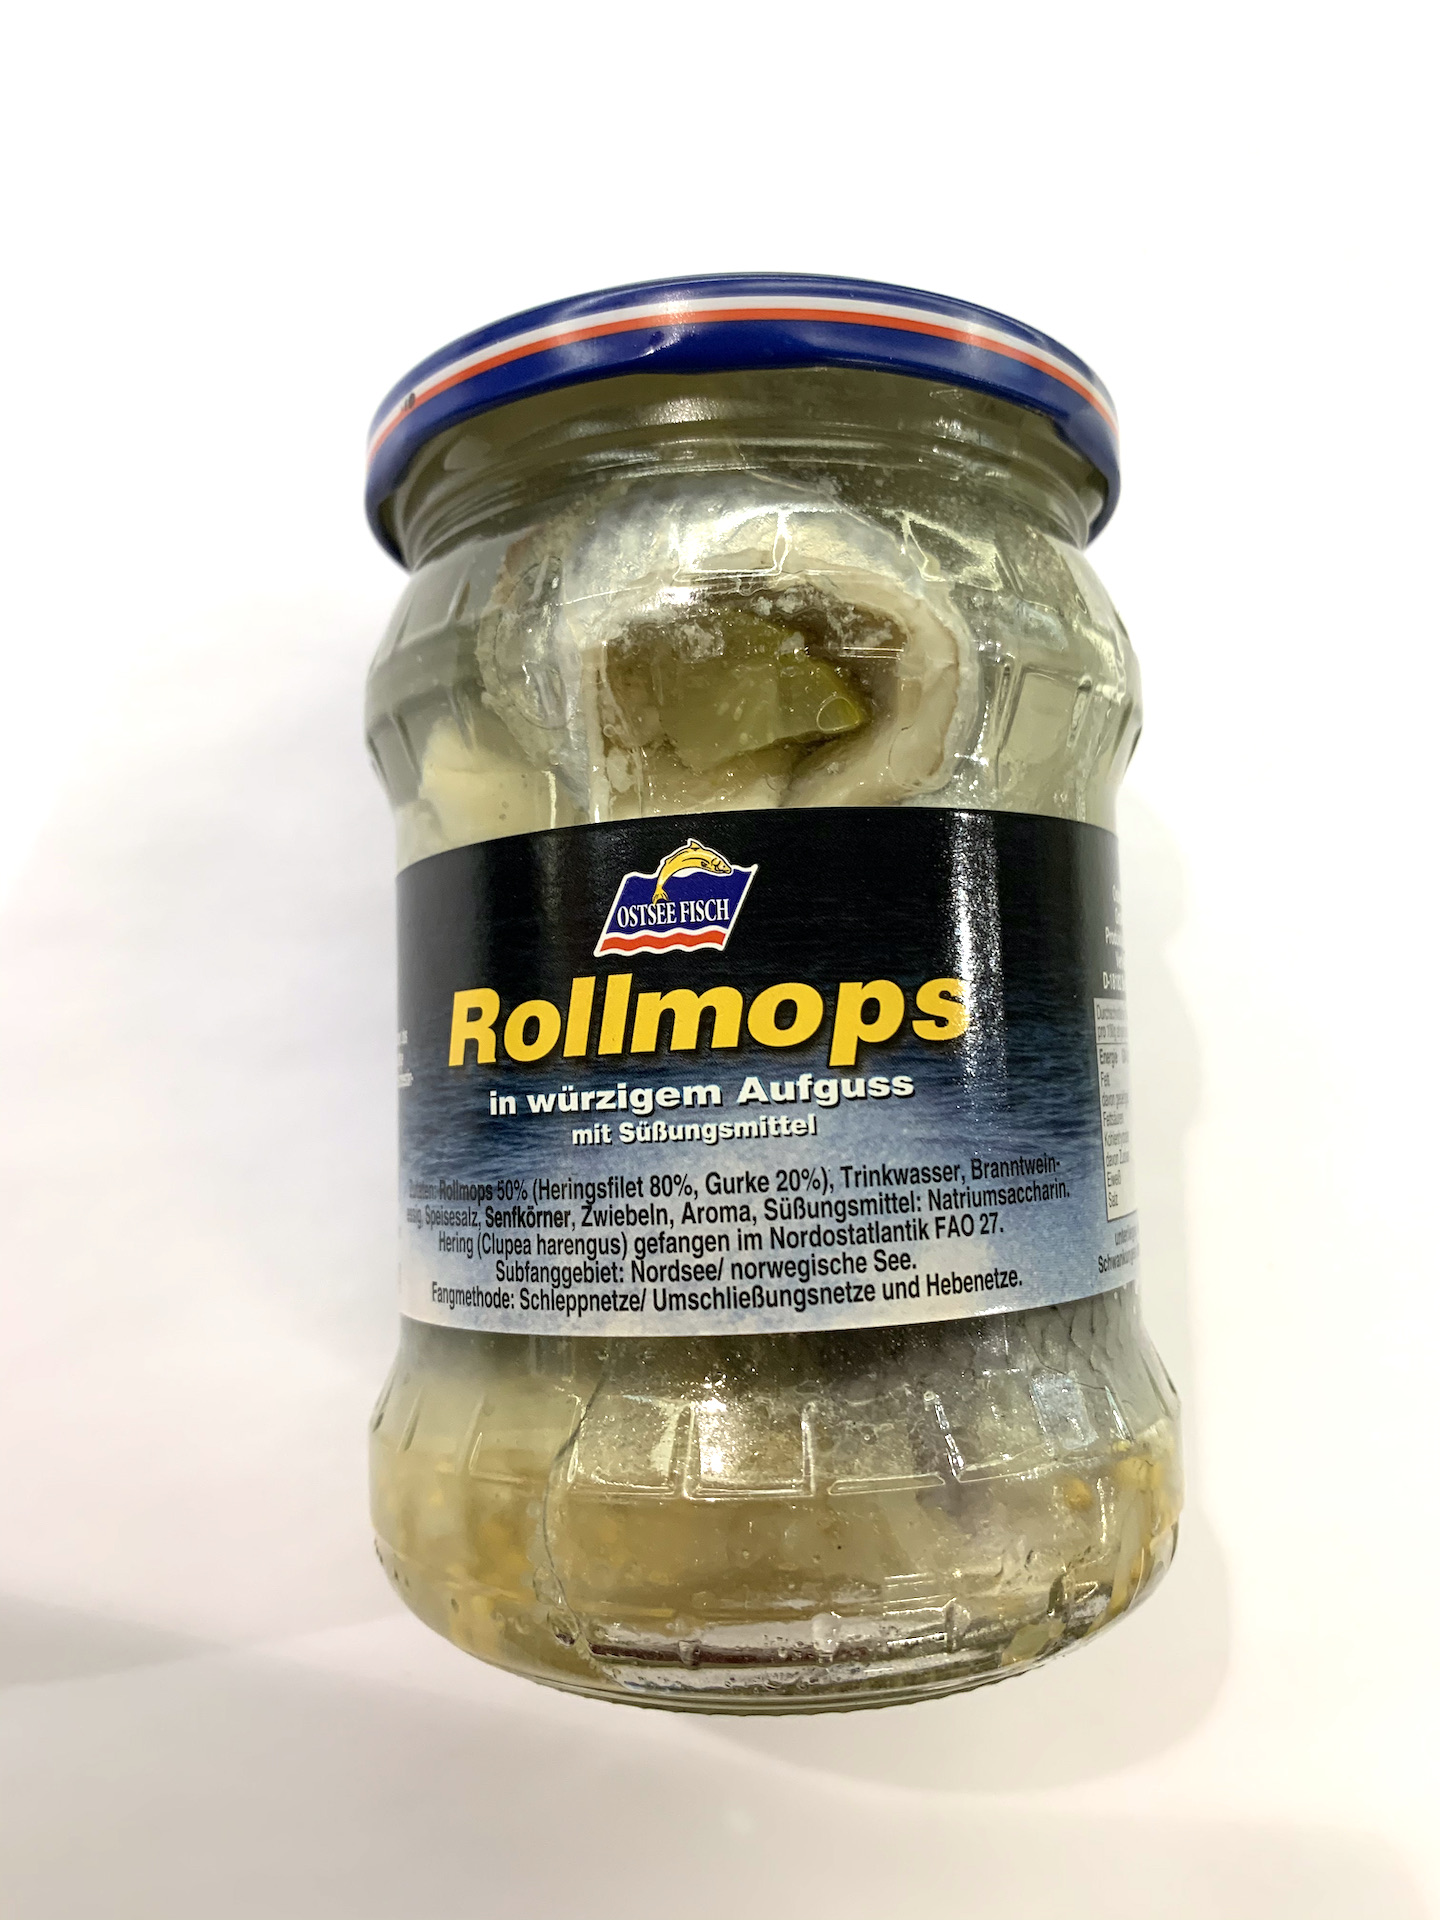 Rollmops 59 kr/st - Österqvist Delikatess &amp; Catering